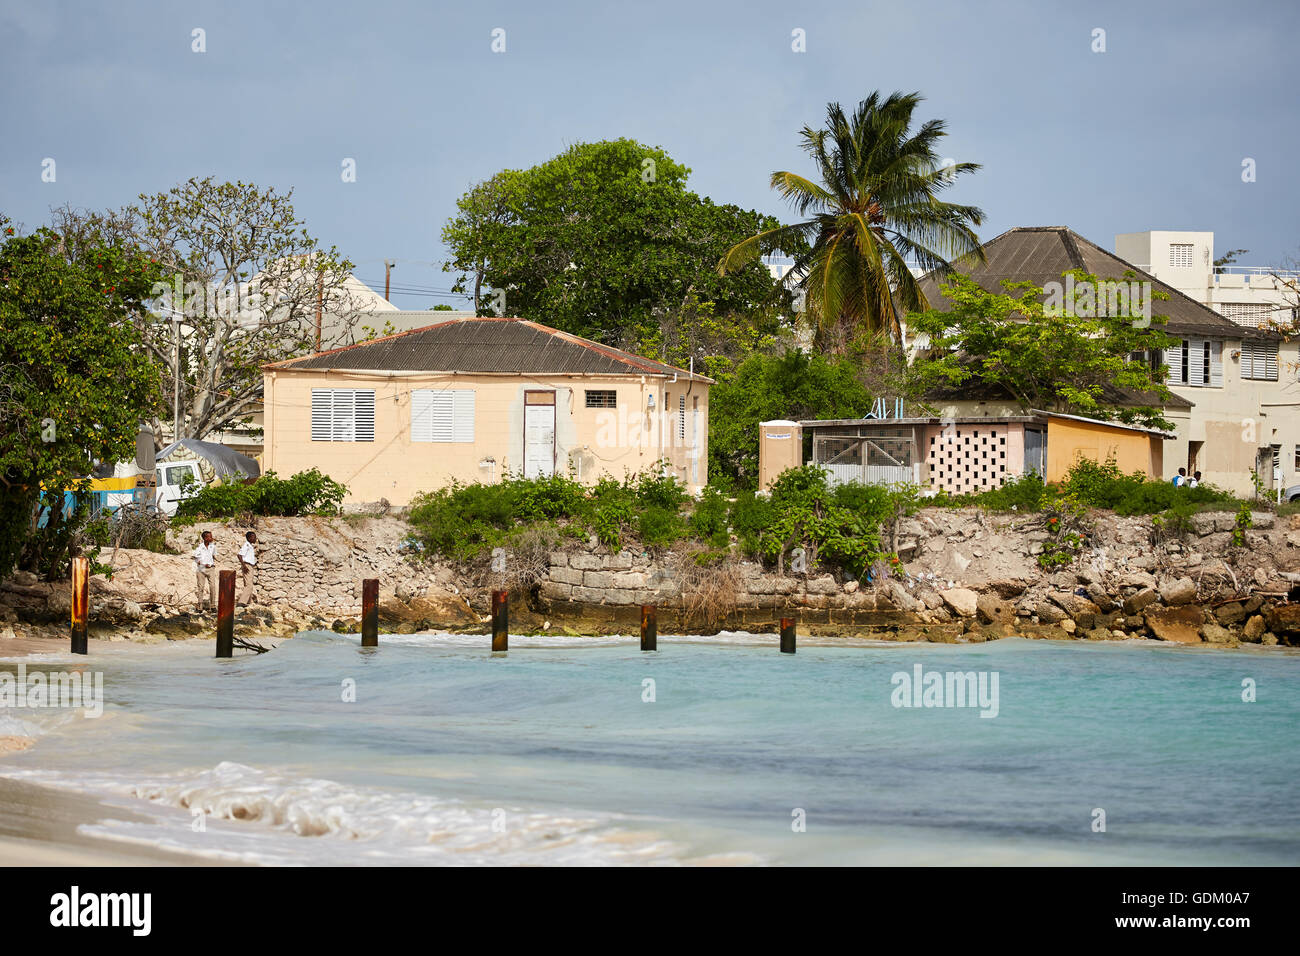 Les Petites Antilles La Barbade paroisse Saint Michael West indies capital La ville côtière de oistins beach houses Banque D'Images